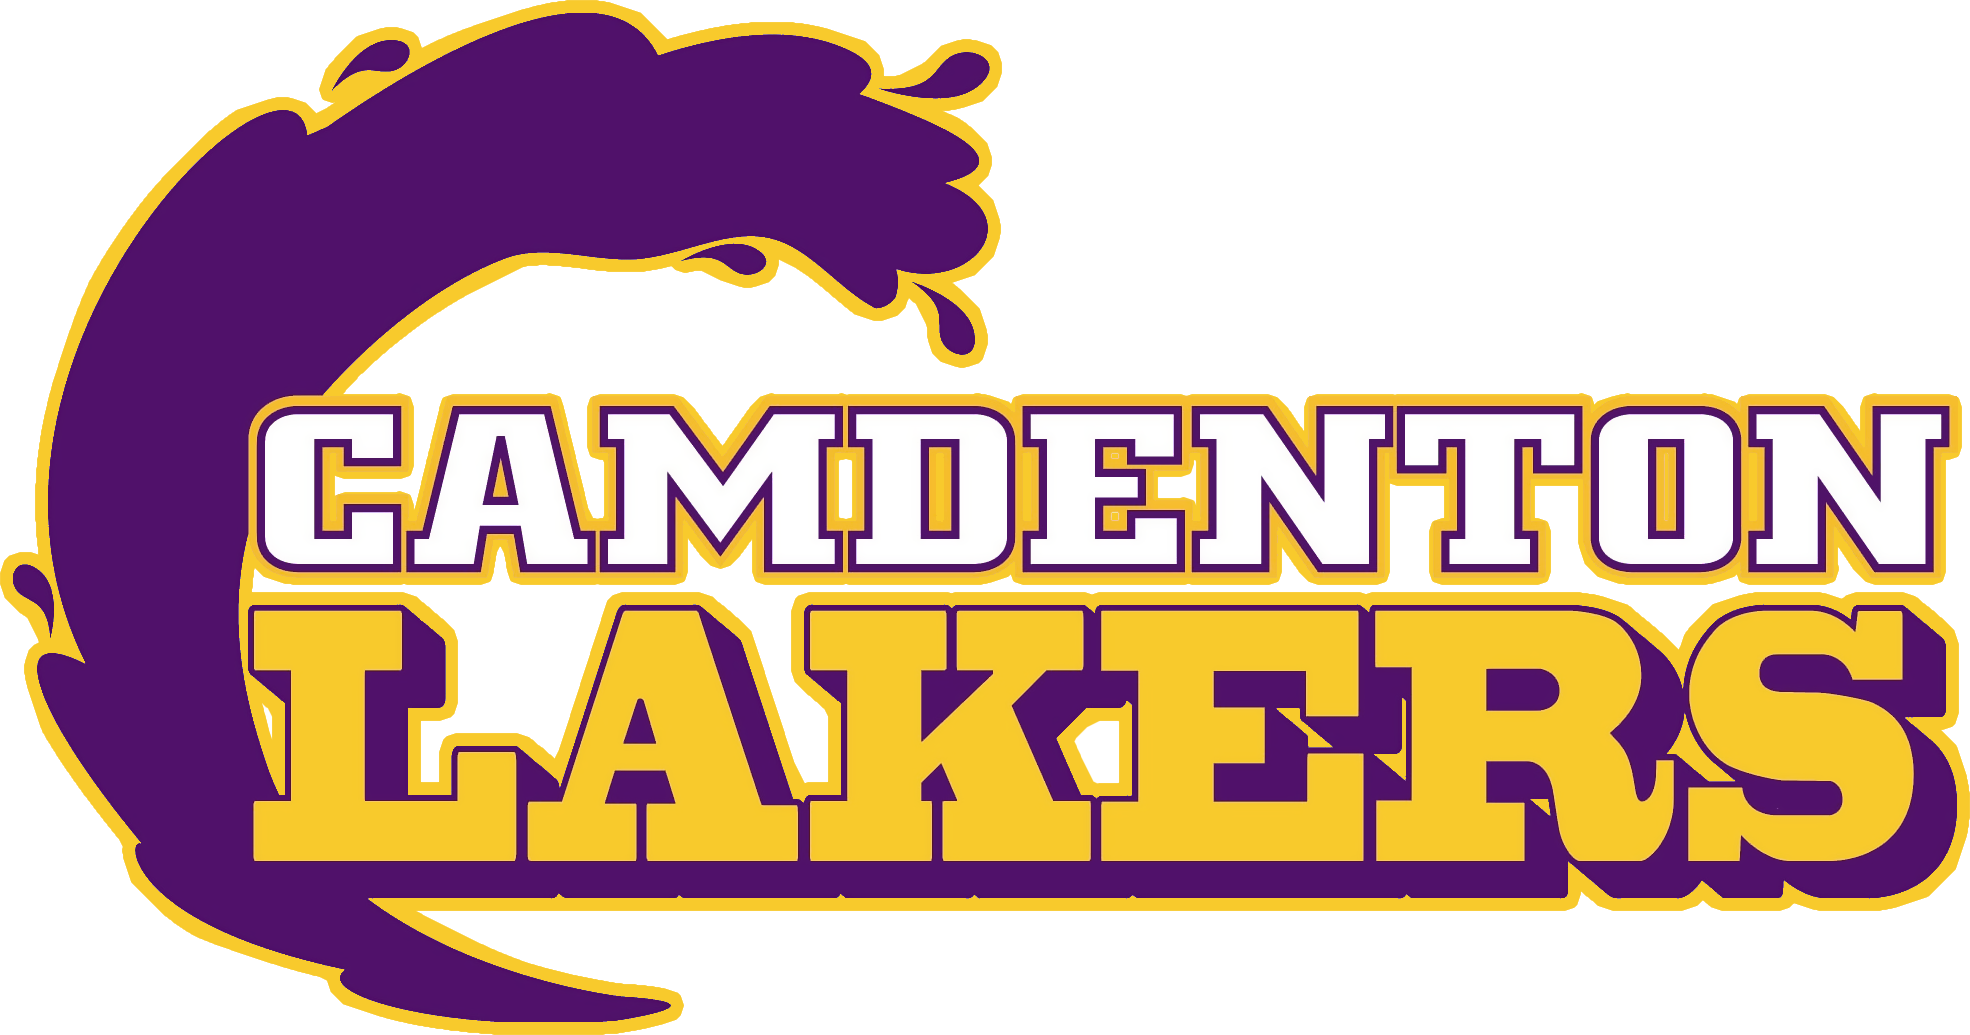 Camdenton logo